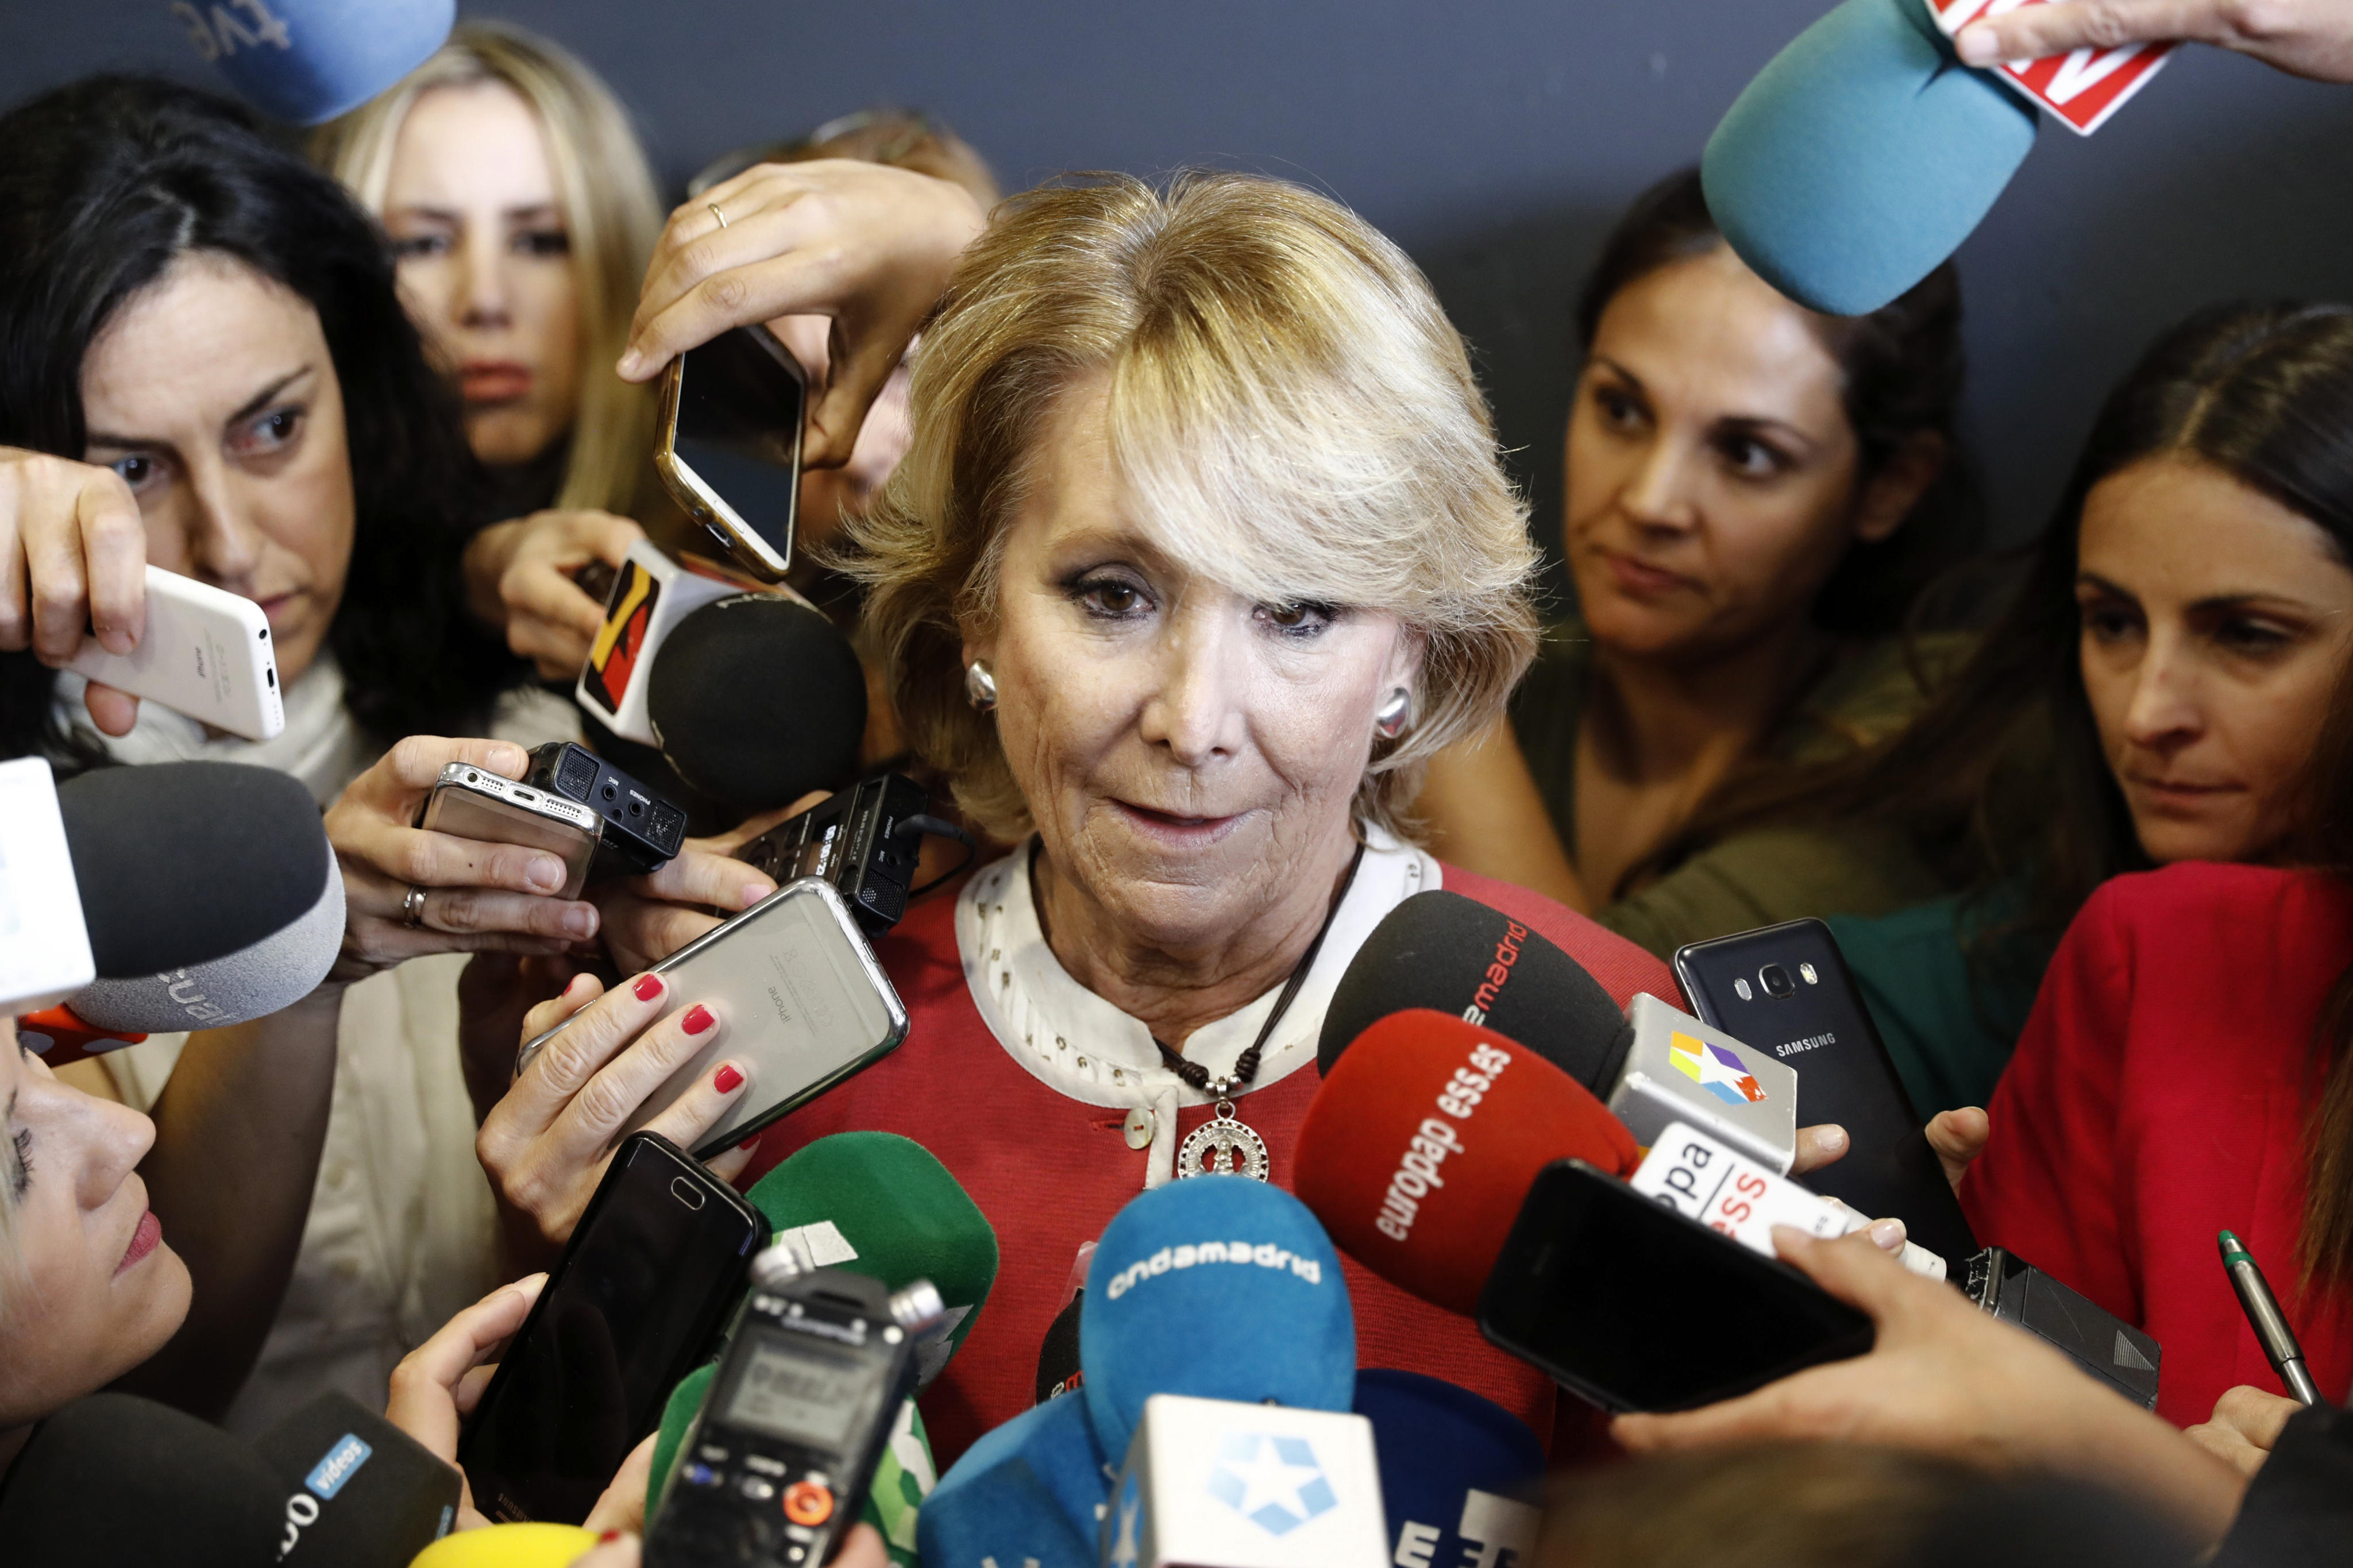 Dimite concejal de Madrid tras escándalo de corrupción en PP